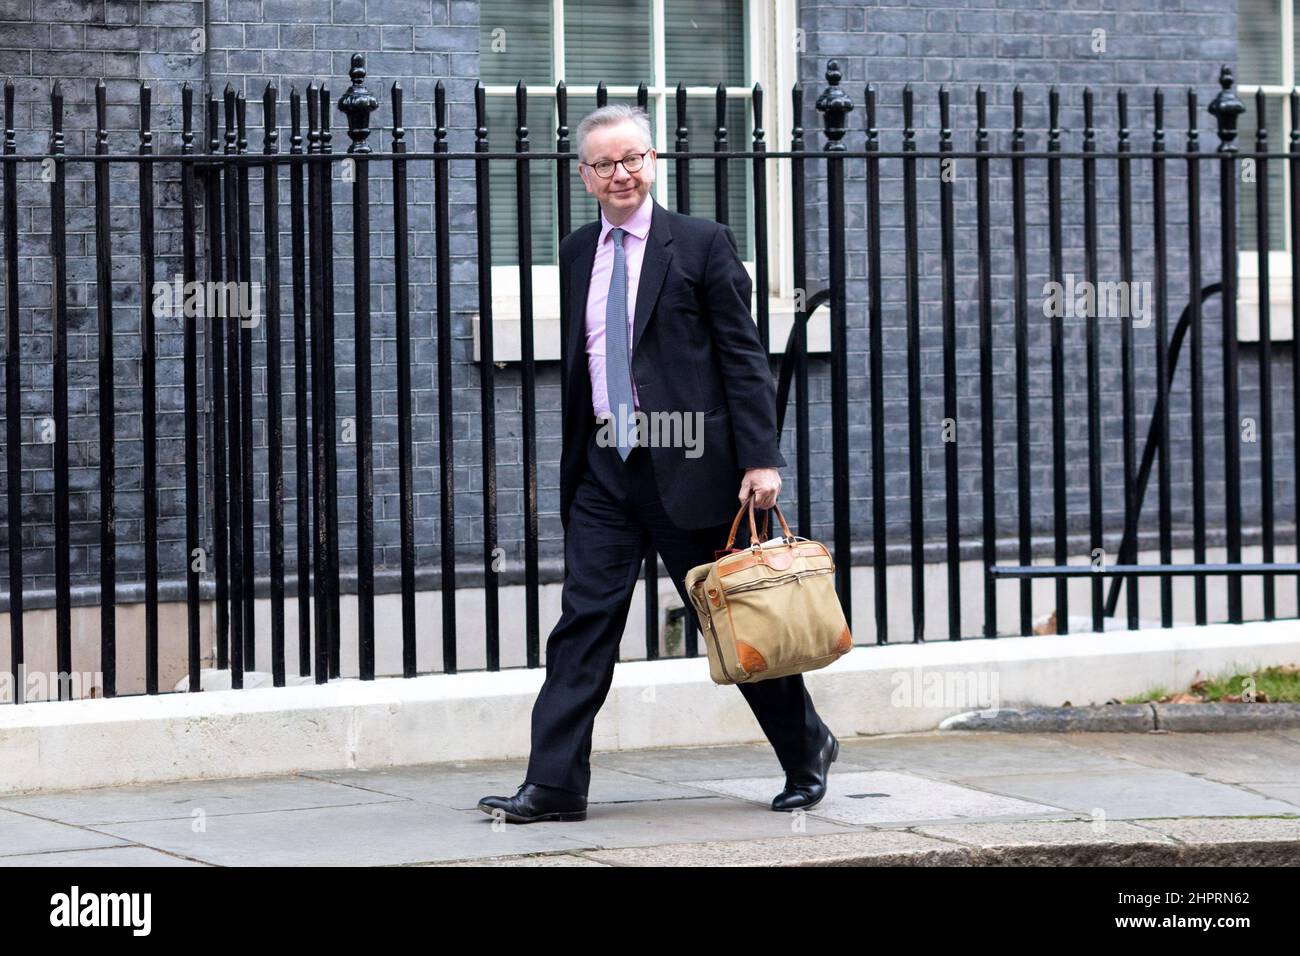 Michael Gove, Royaume-Uni Downing Street Secrétaire d’État à la mise à niveau, au logement et aux communautés quitte le N° 10 avant le Premier ministre Questio de cette semaine Banque D'Images